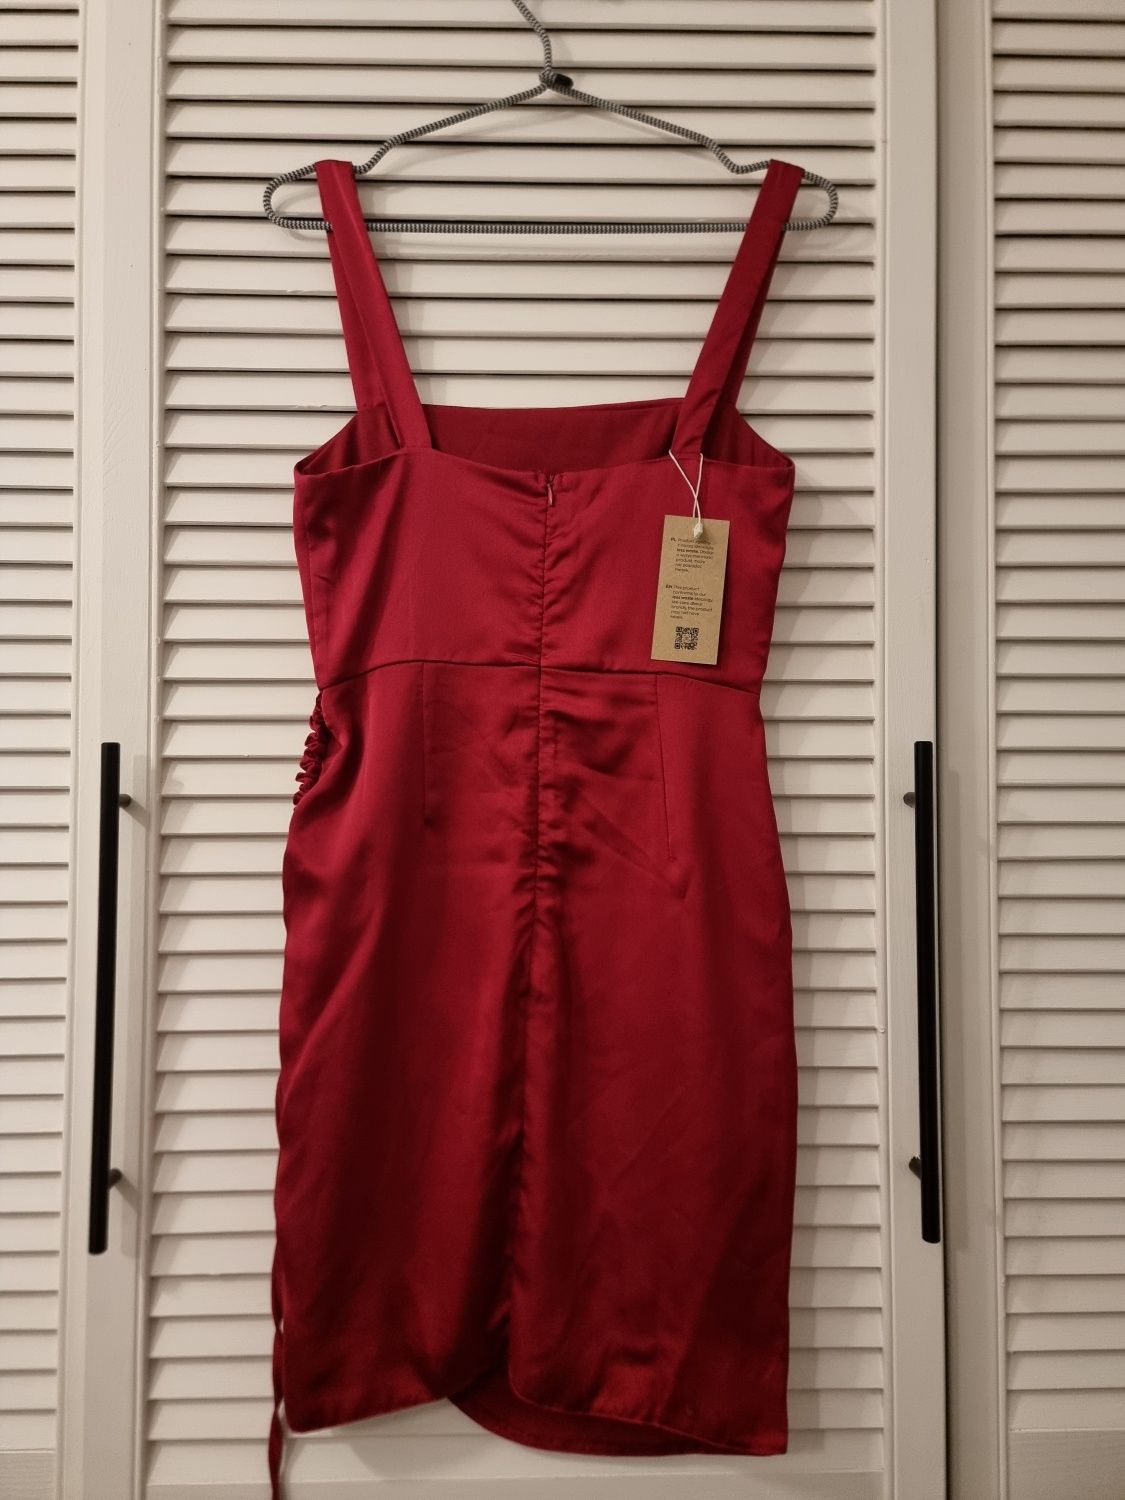 Sukienka satynowa atłasowa święta czerwona bordowa